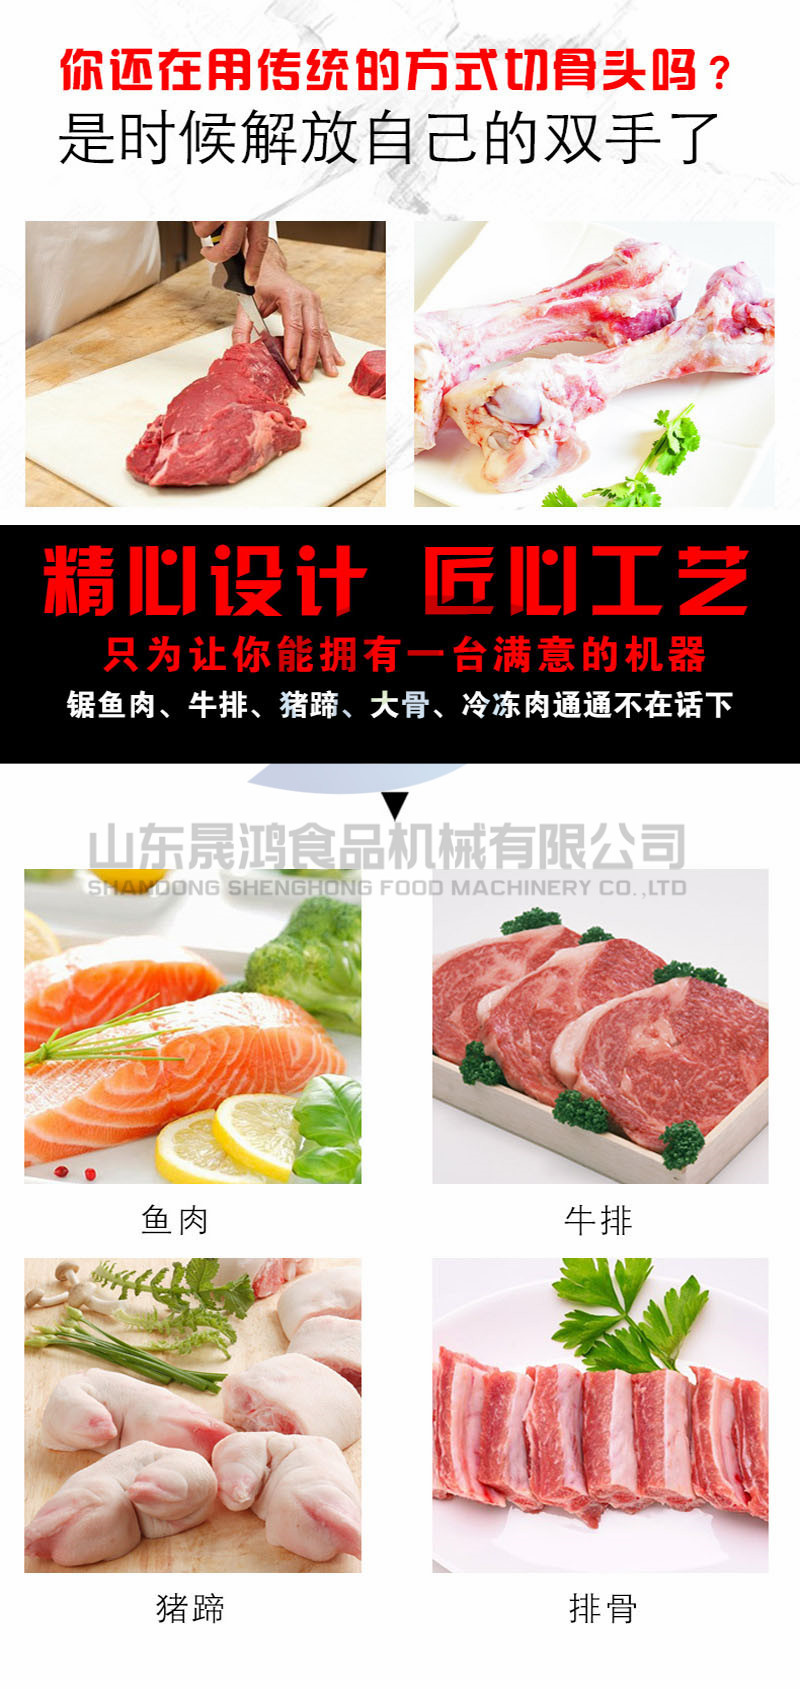 销售台湾牌冻肉切割机 冻骨锯骨机 大型冻品切块机 肉排锯骨机示例图5